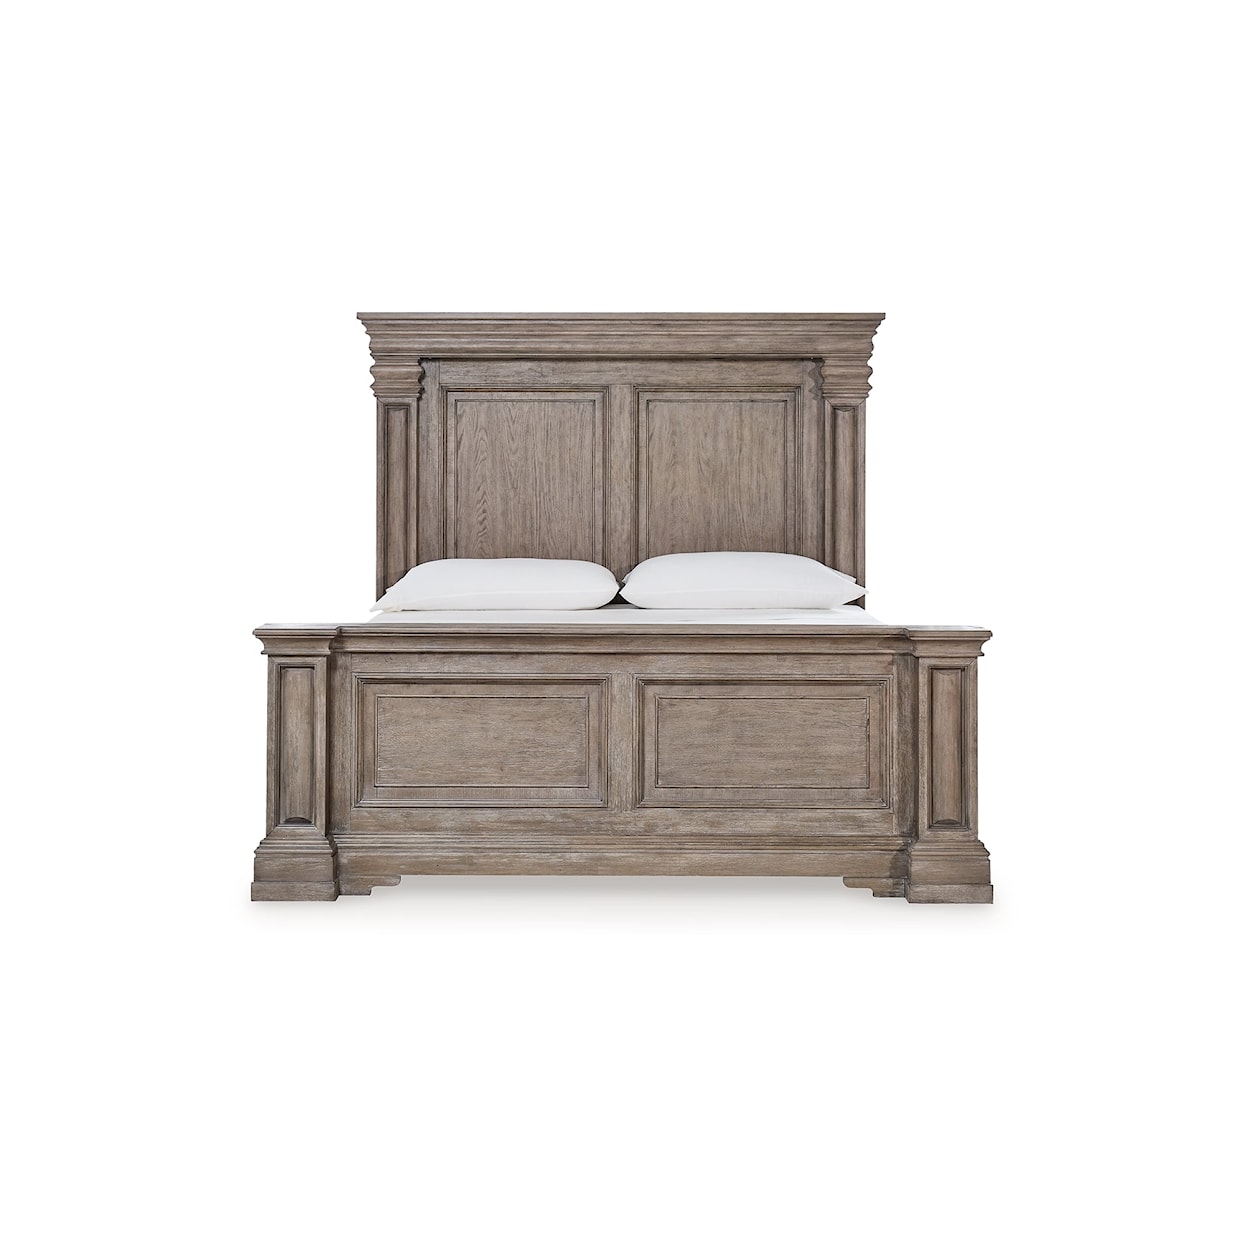 Ashley Furniture Signature Design Blairhurst Queen Panel Bed